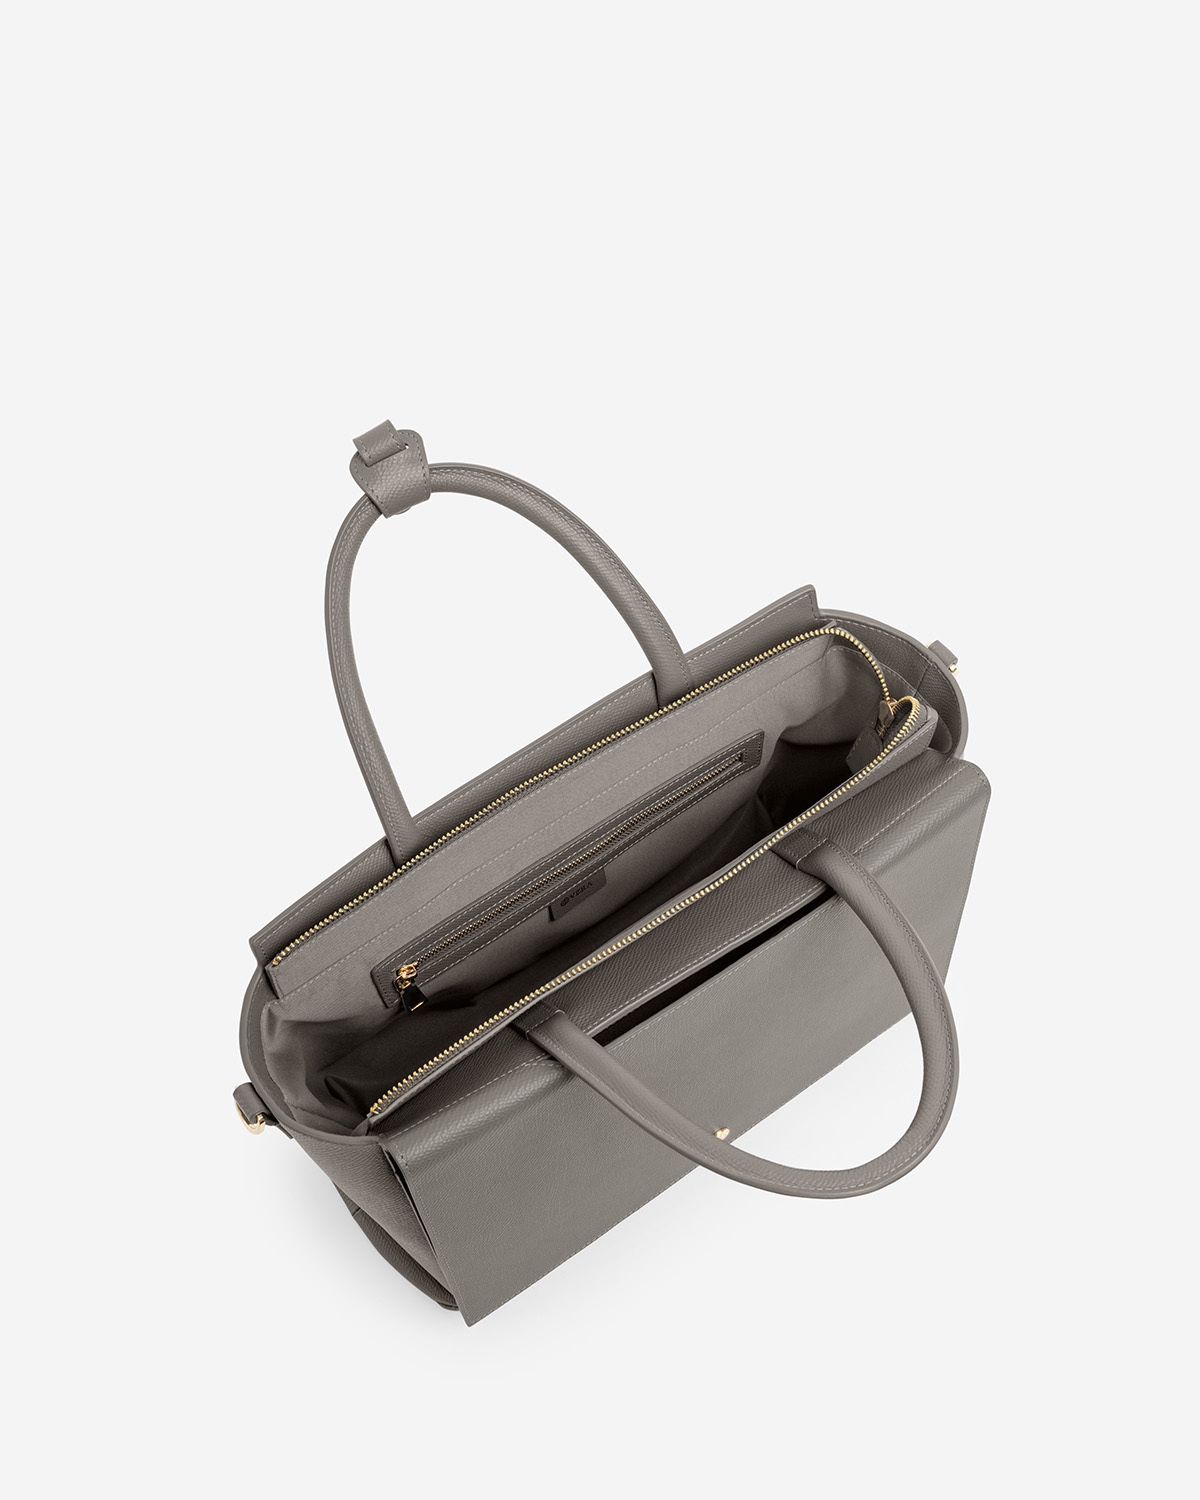 กระเป๋าถือหนังแท้ VERA Heidi Leather Handbag, ไซส์ 34 สี Smoke